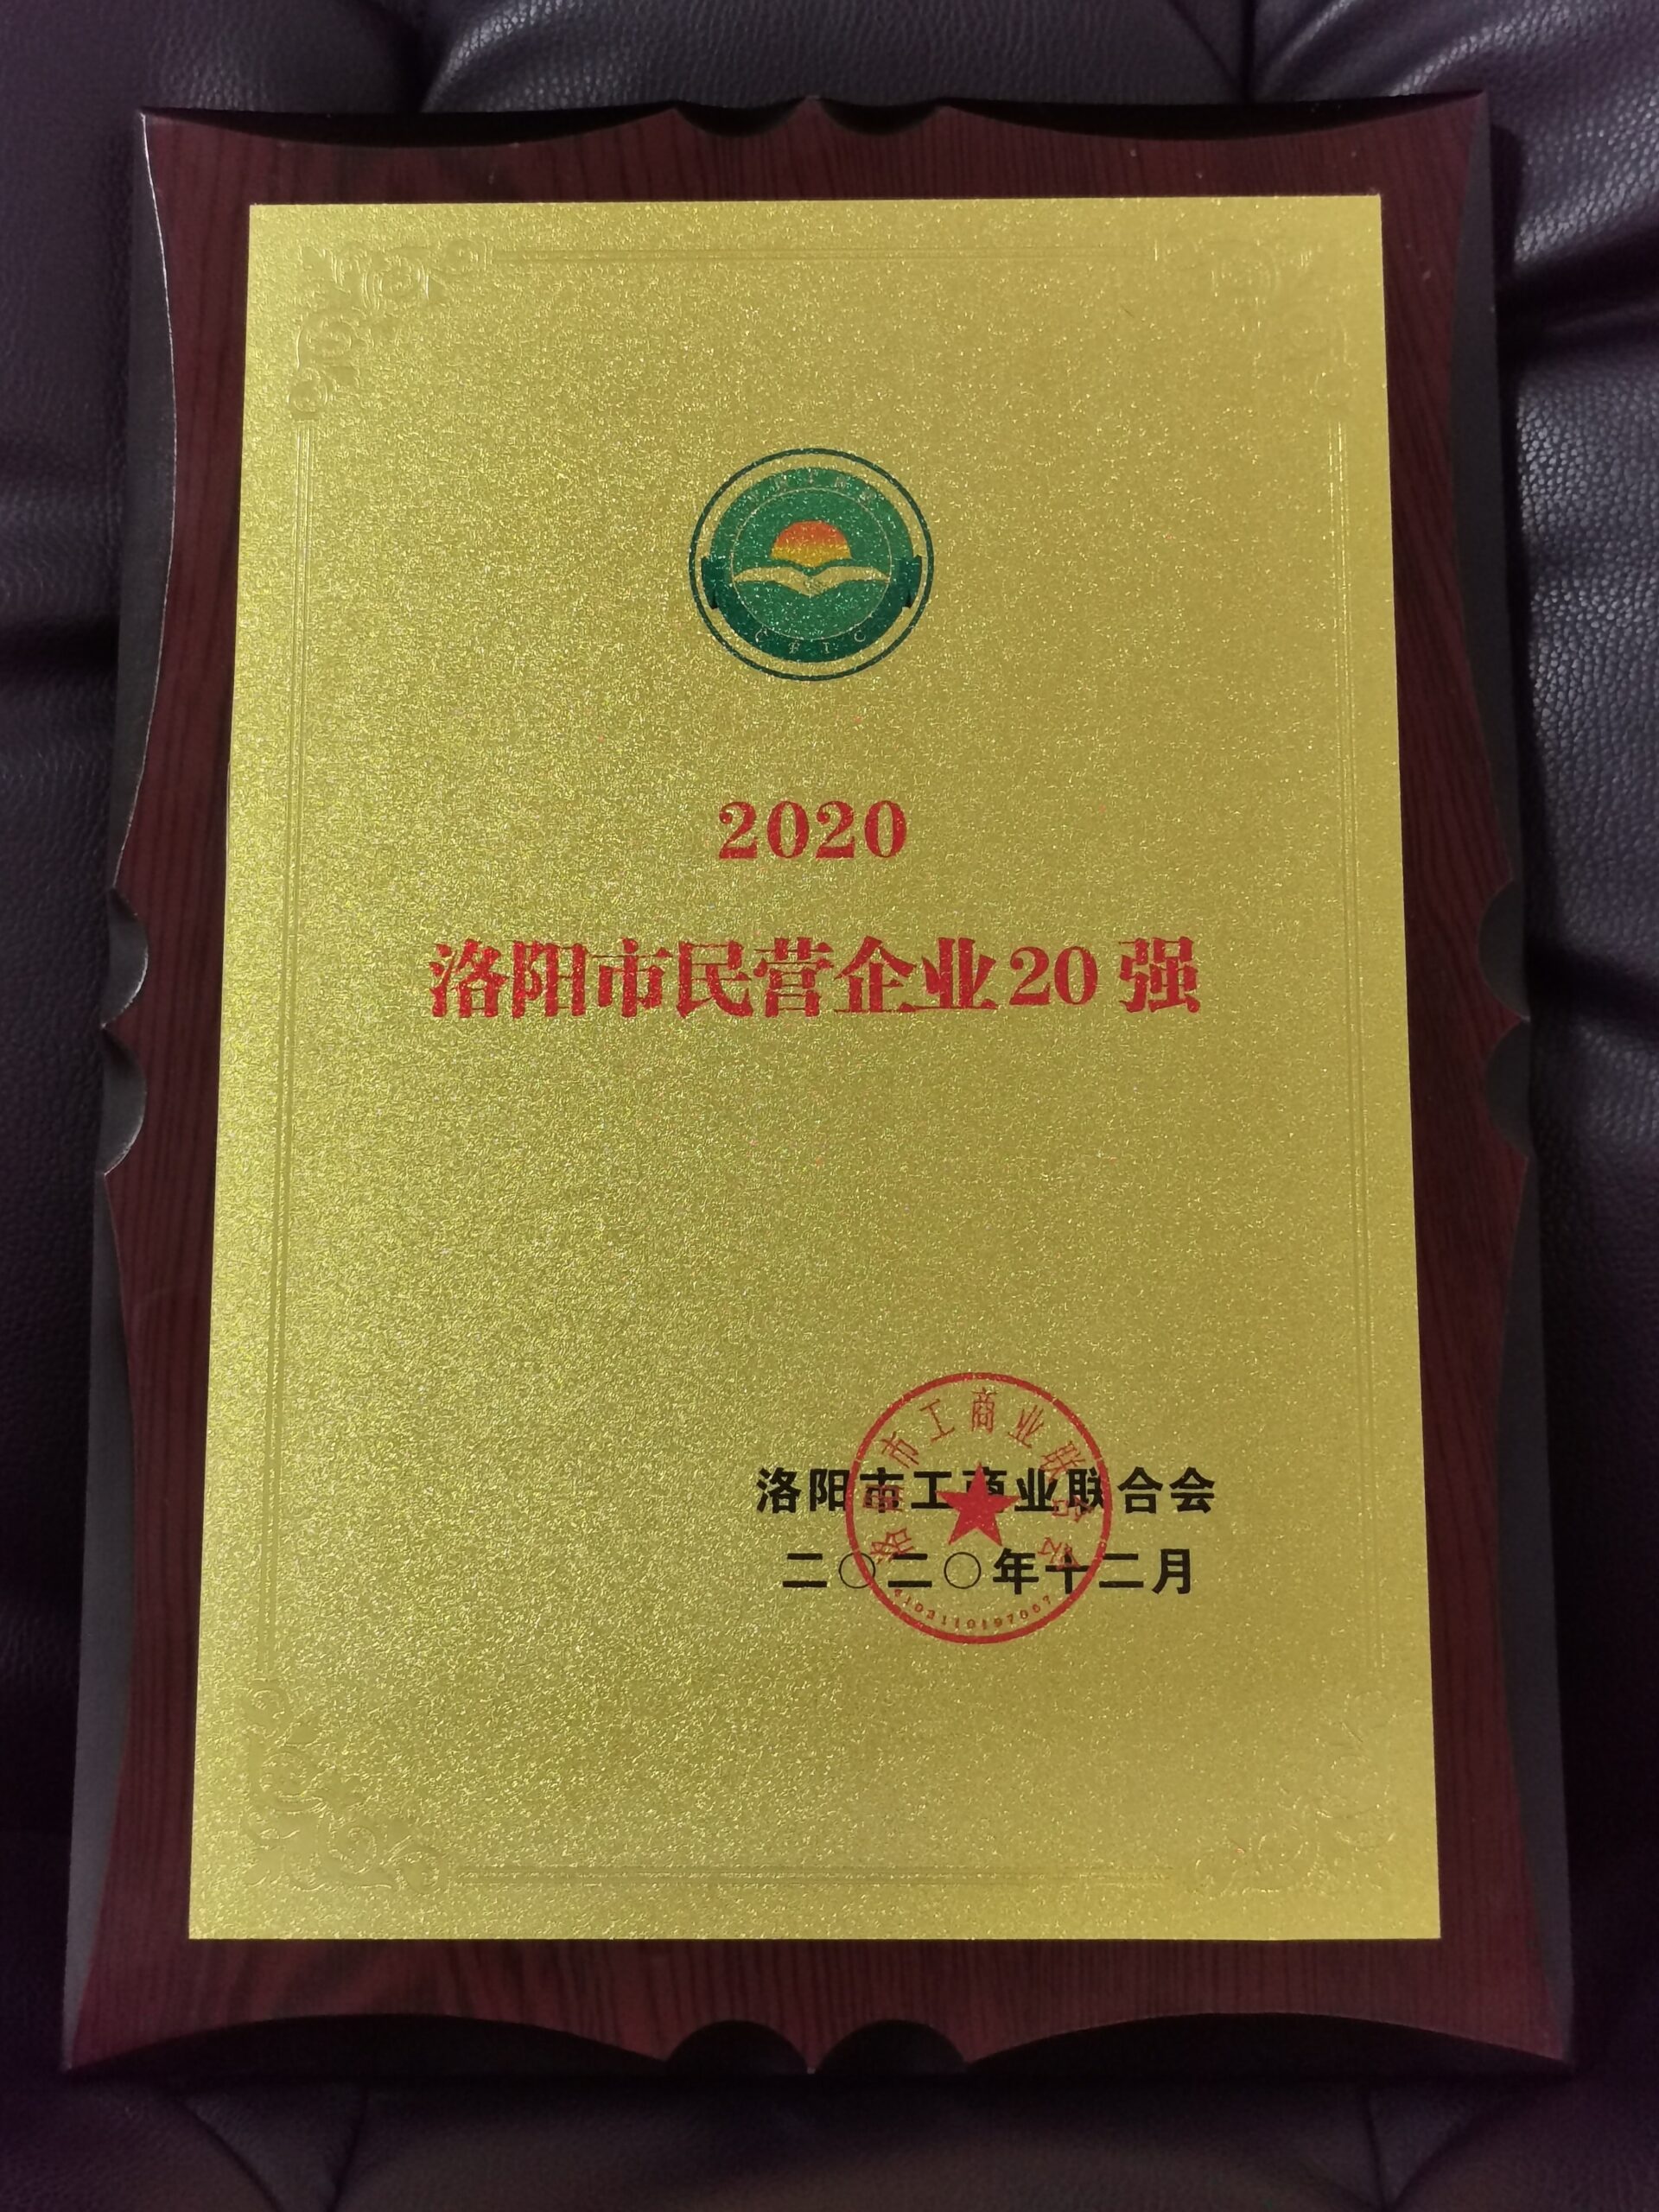 河南申泰控股集团喜获“2020洛阳民营企业20强”